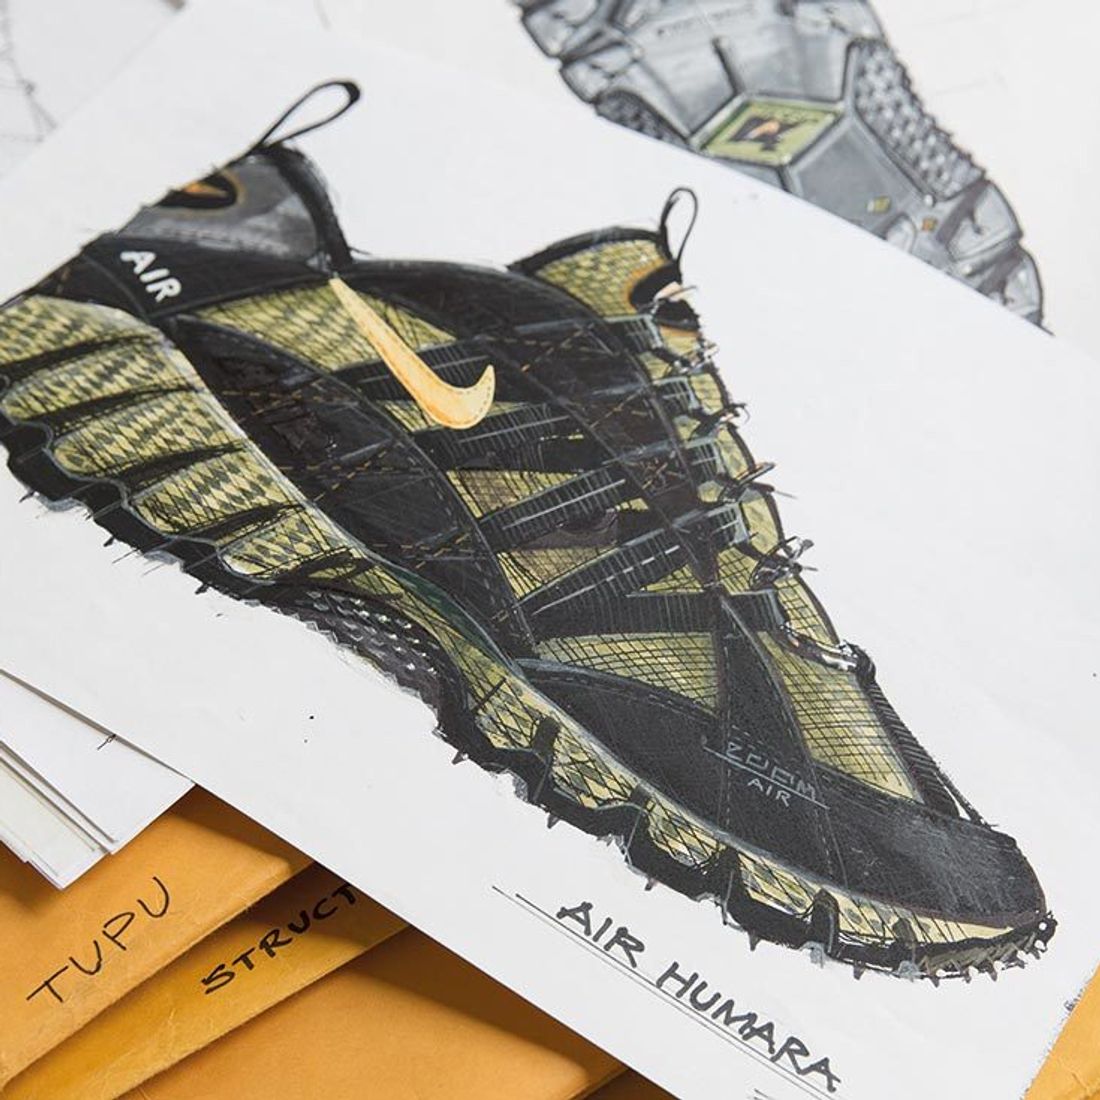 Blazing Trails with OG Nike Designer Peter - Sneaker